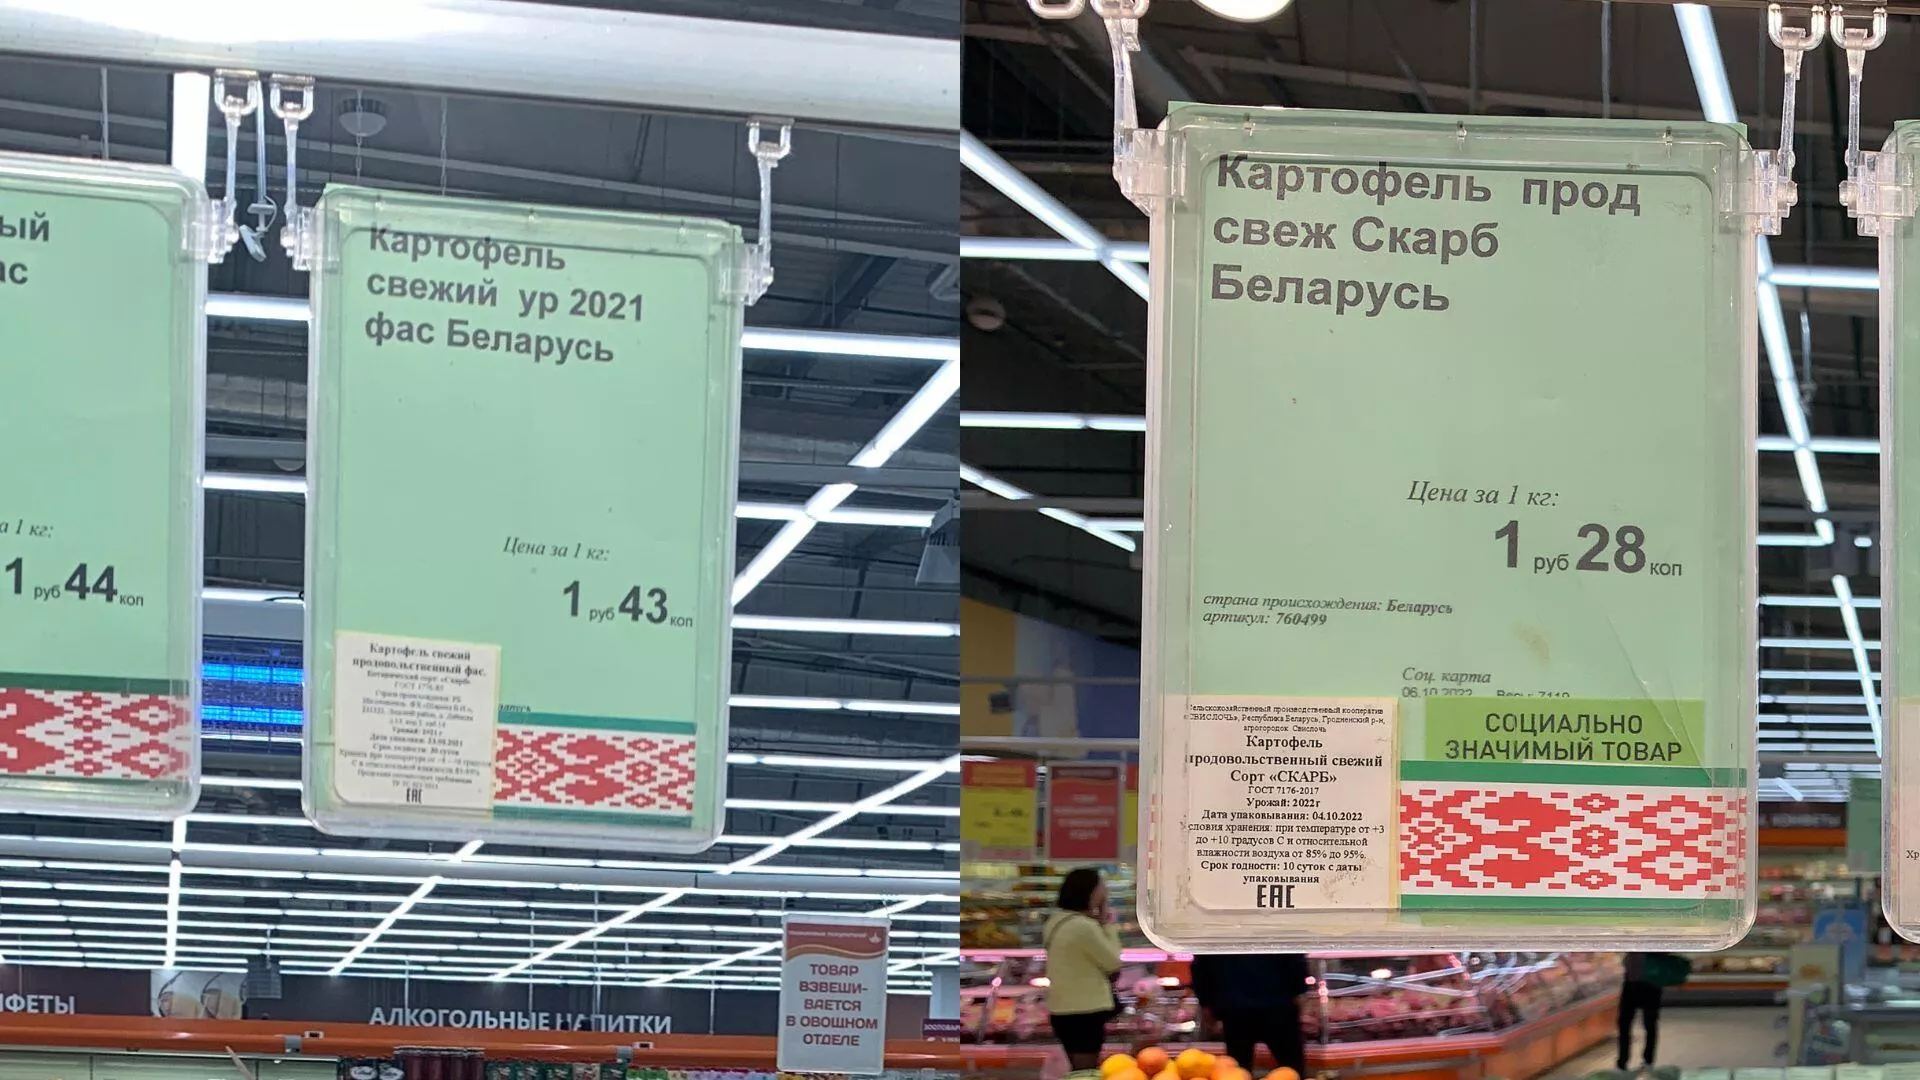 Рост до 1,5 раз: как изменились цены на продукты за год - Sputnik Беларусь, 1920, 19.10.2022